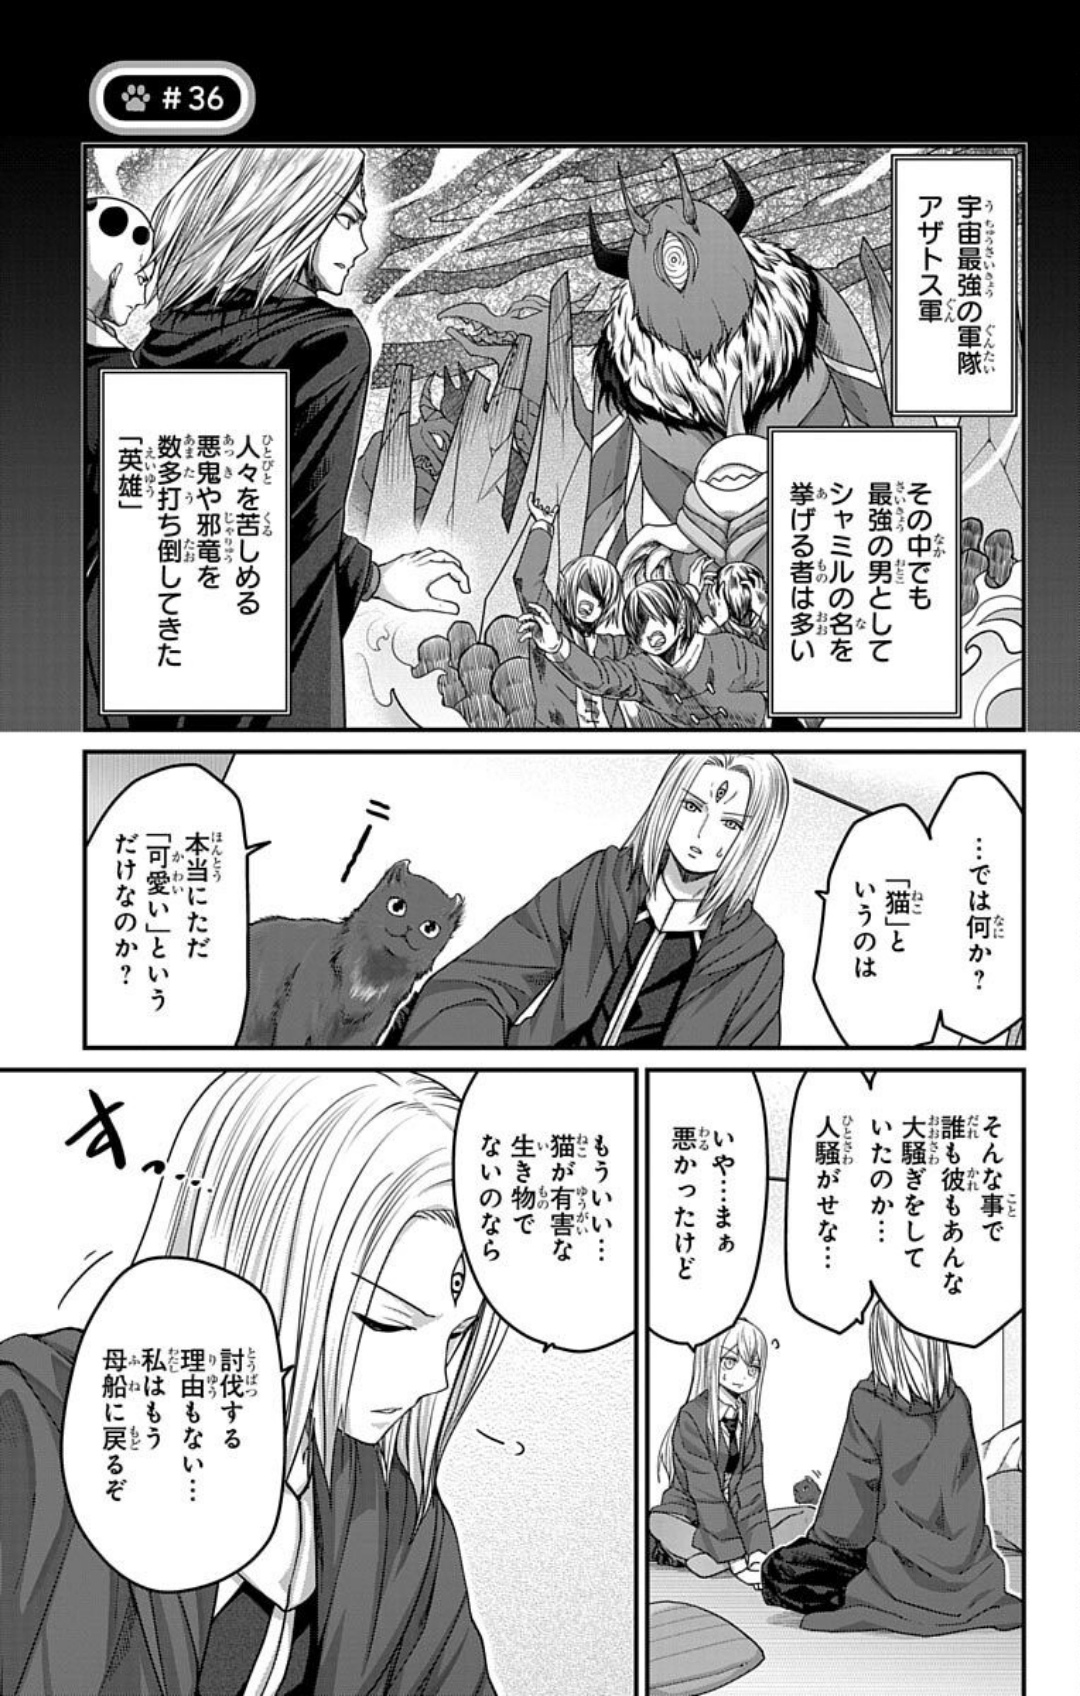 Kawaisugi Crisis - Chapter 36 - Page 1